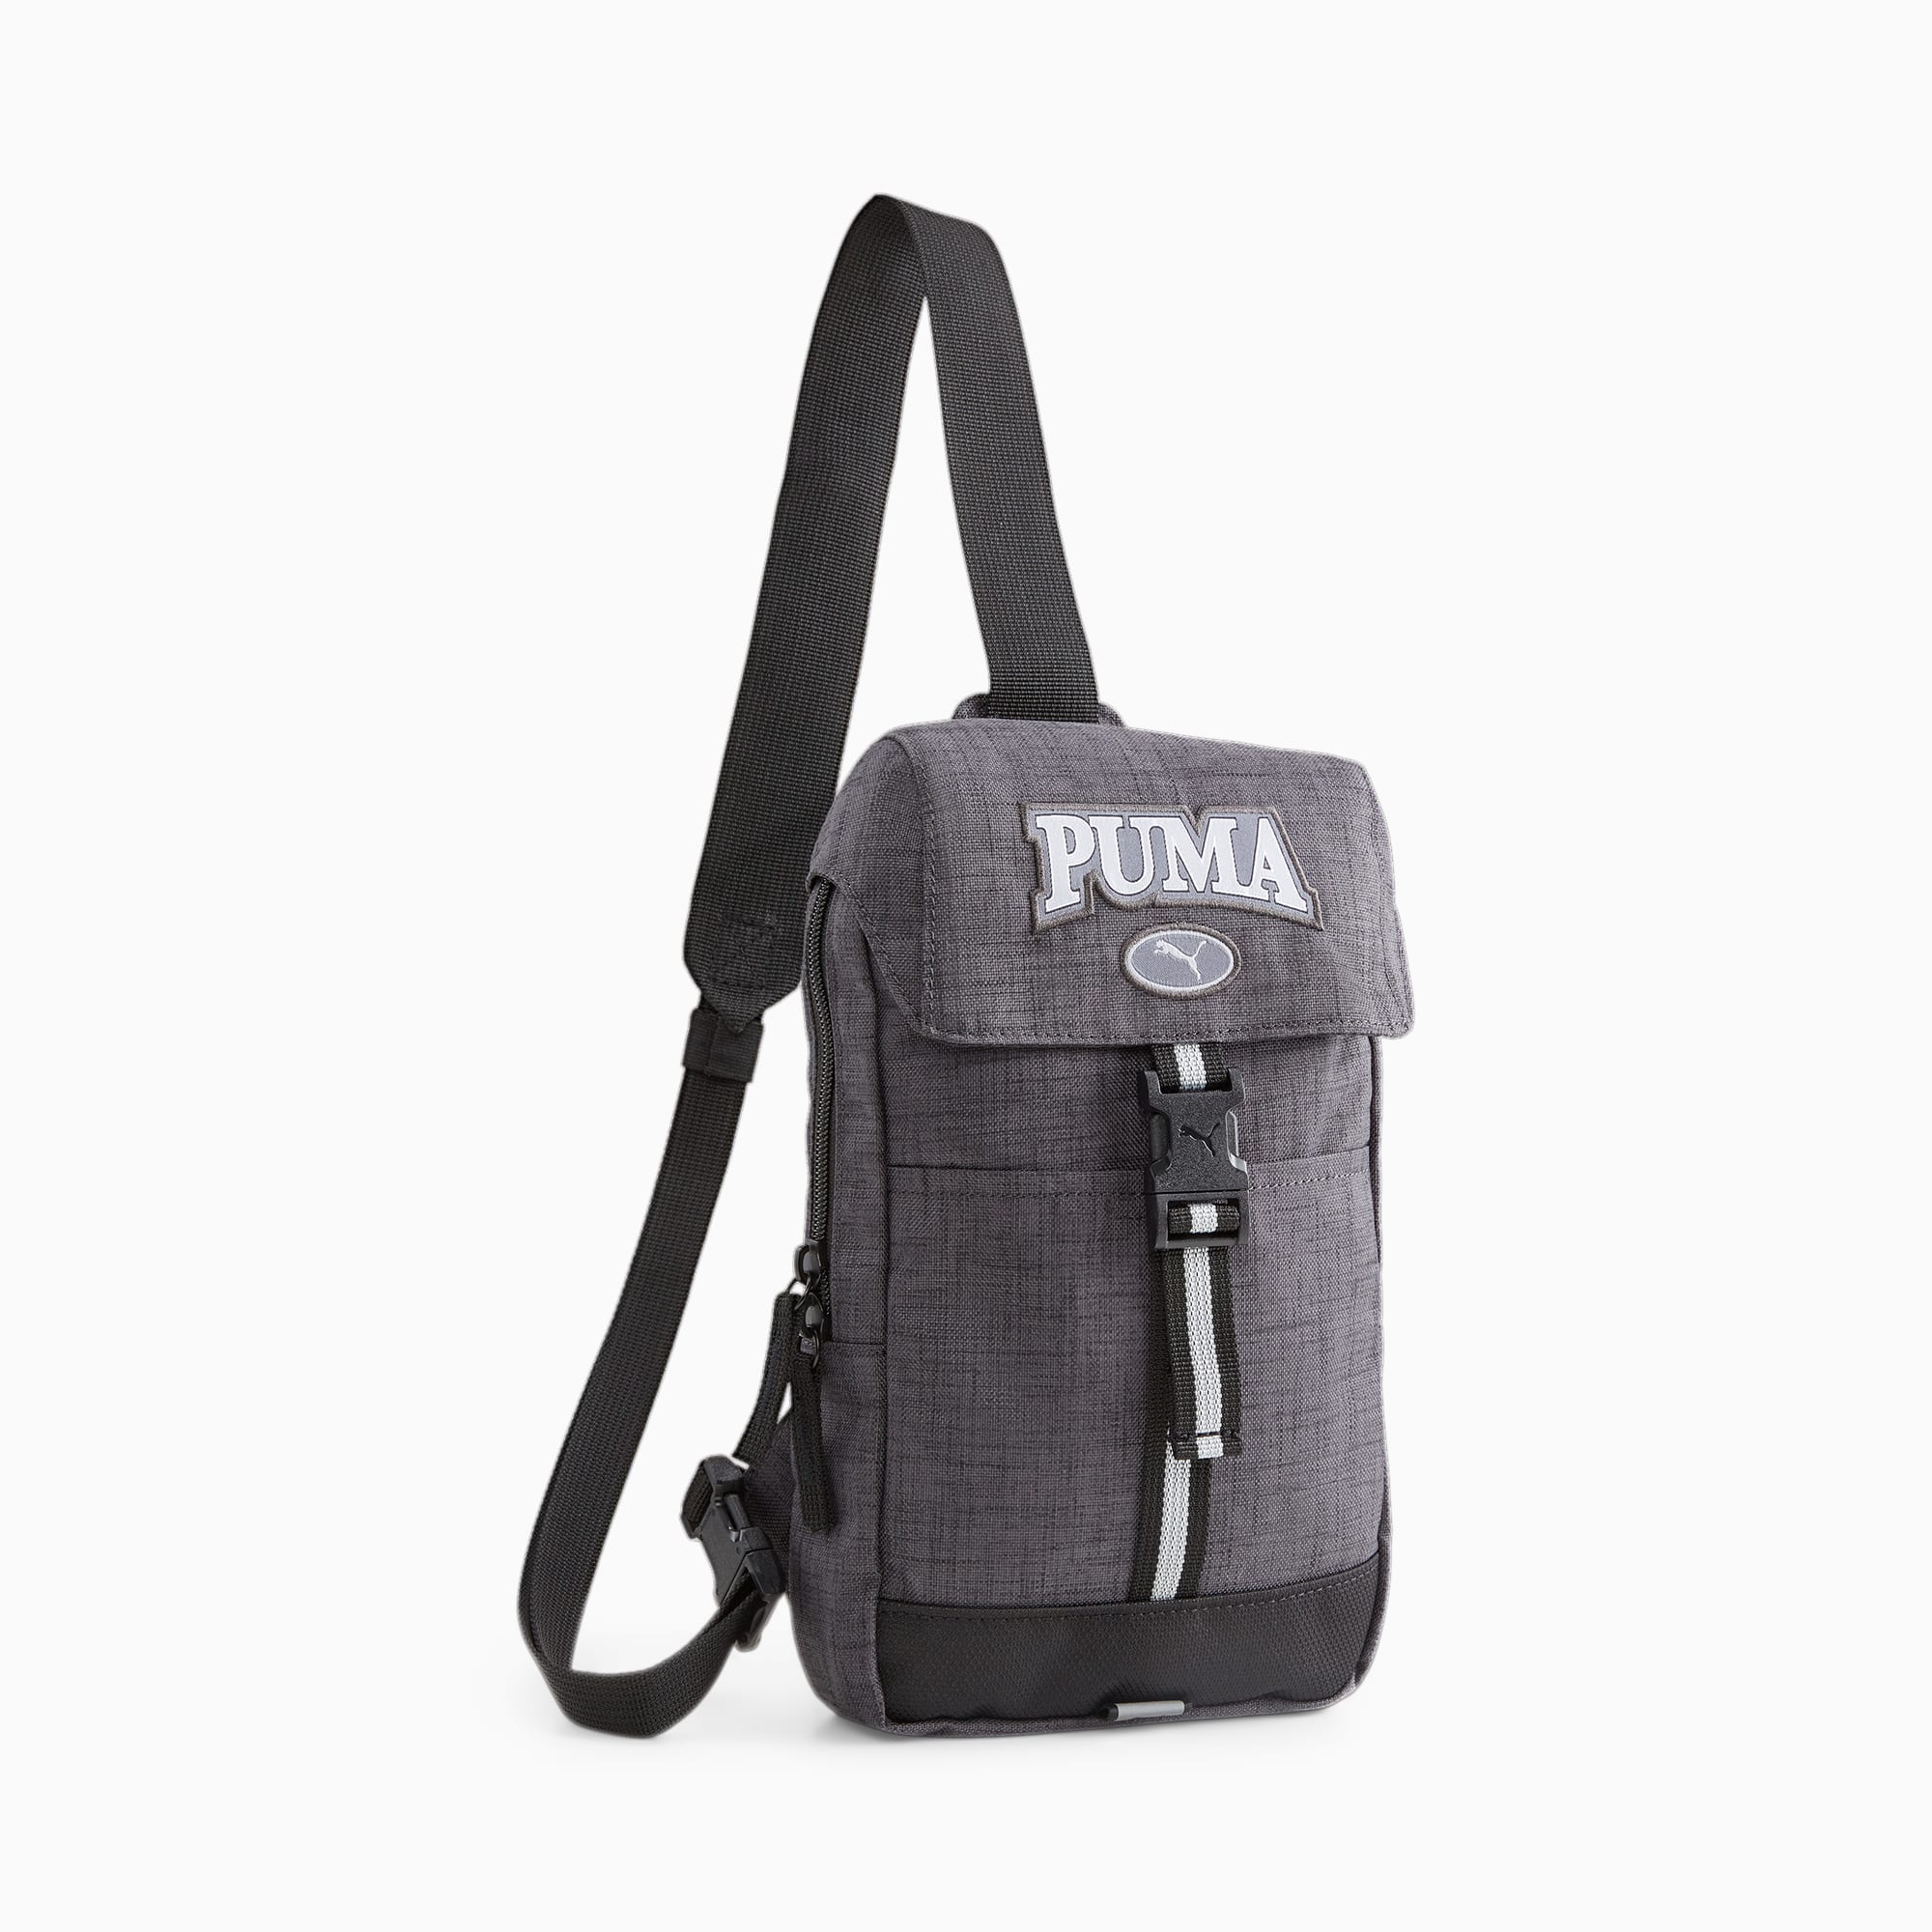 PUMA Squad Cross Body Bag | PUMA Shop All Puma | PUMA